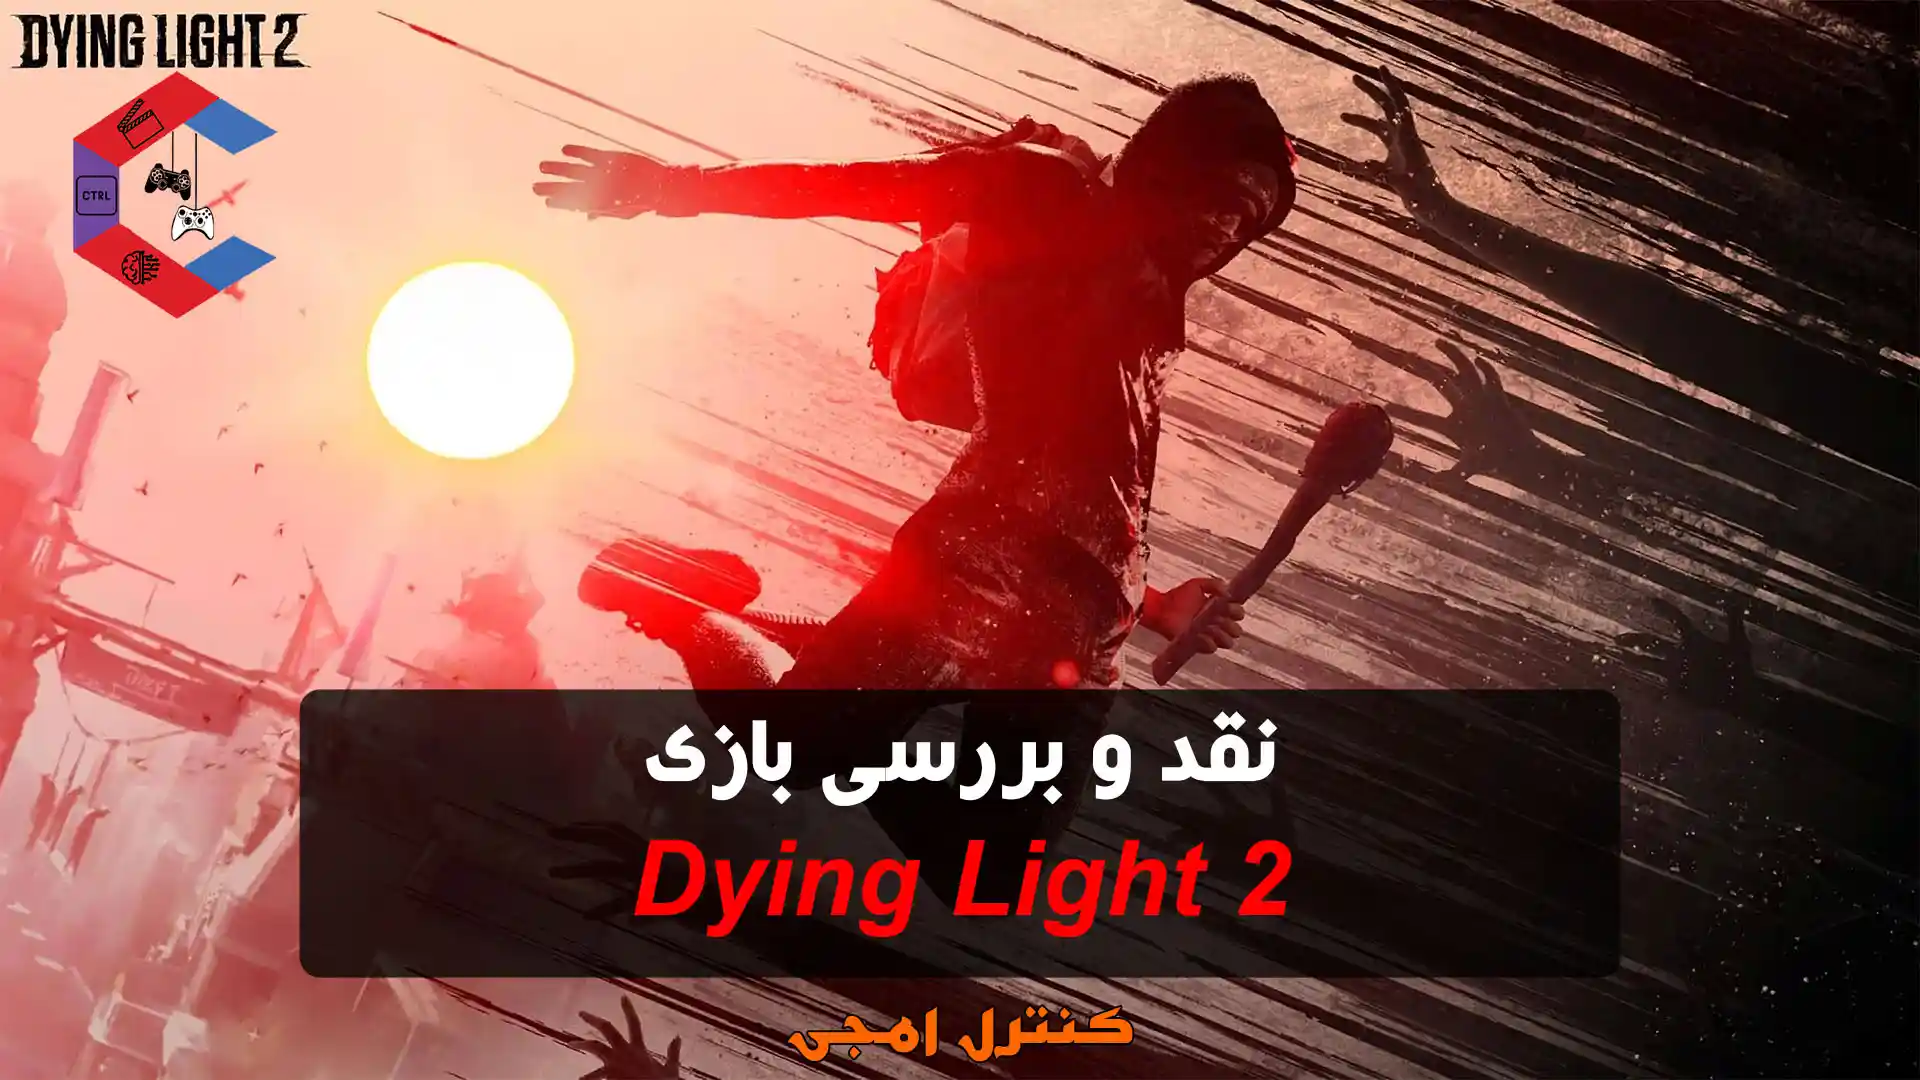 نقد و بررسی بازی Dying light 2